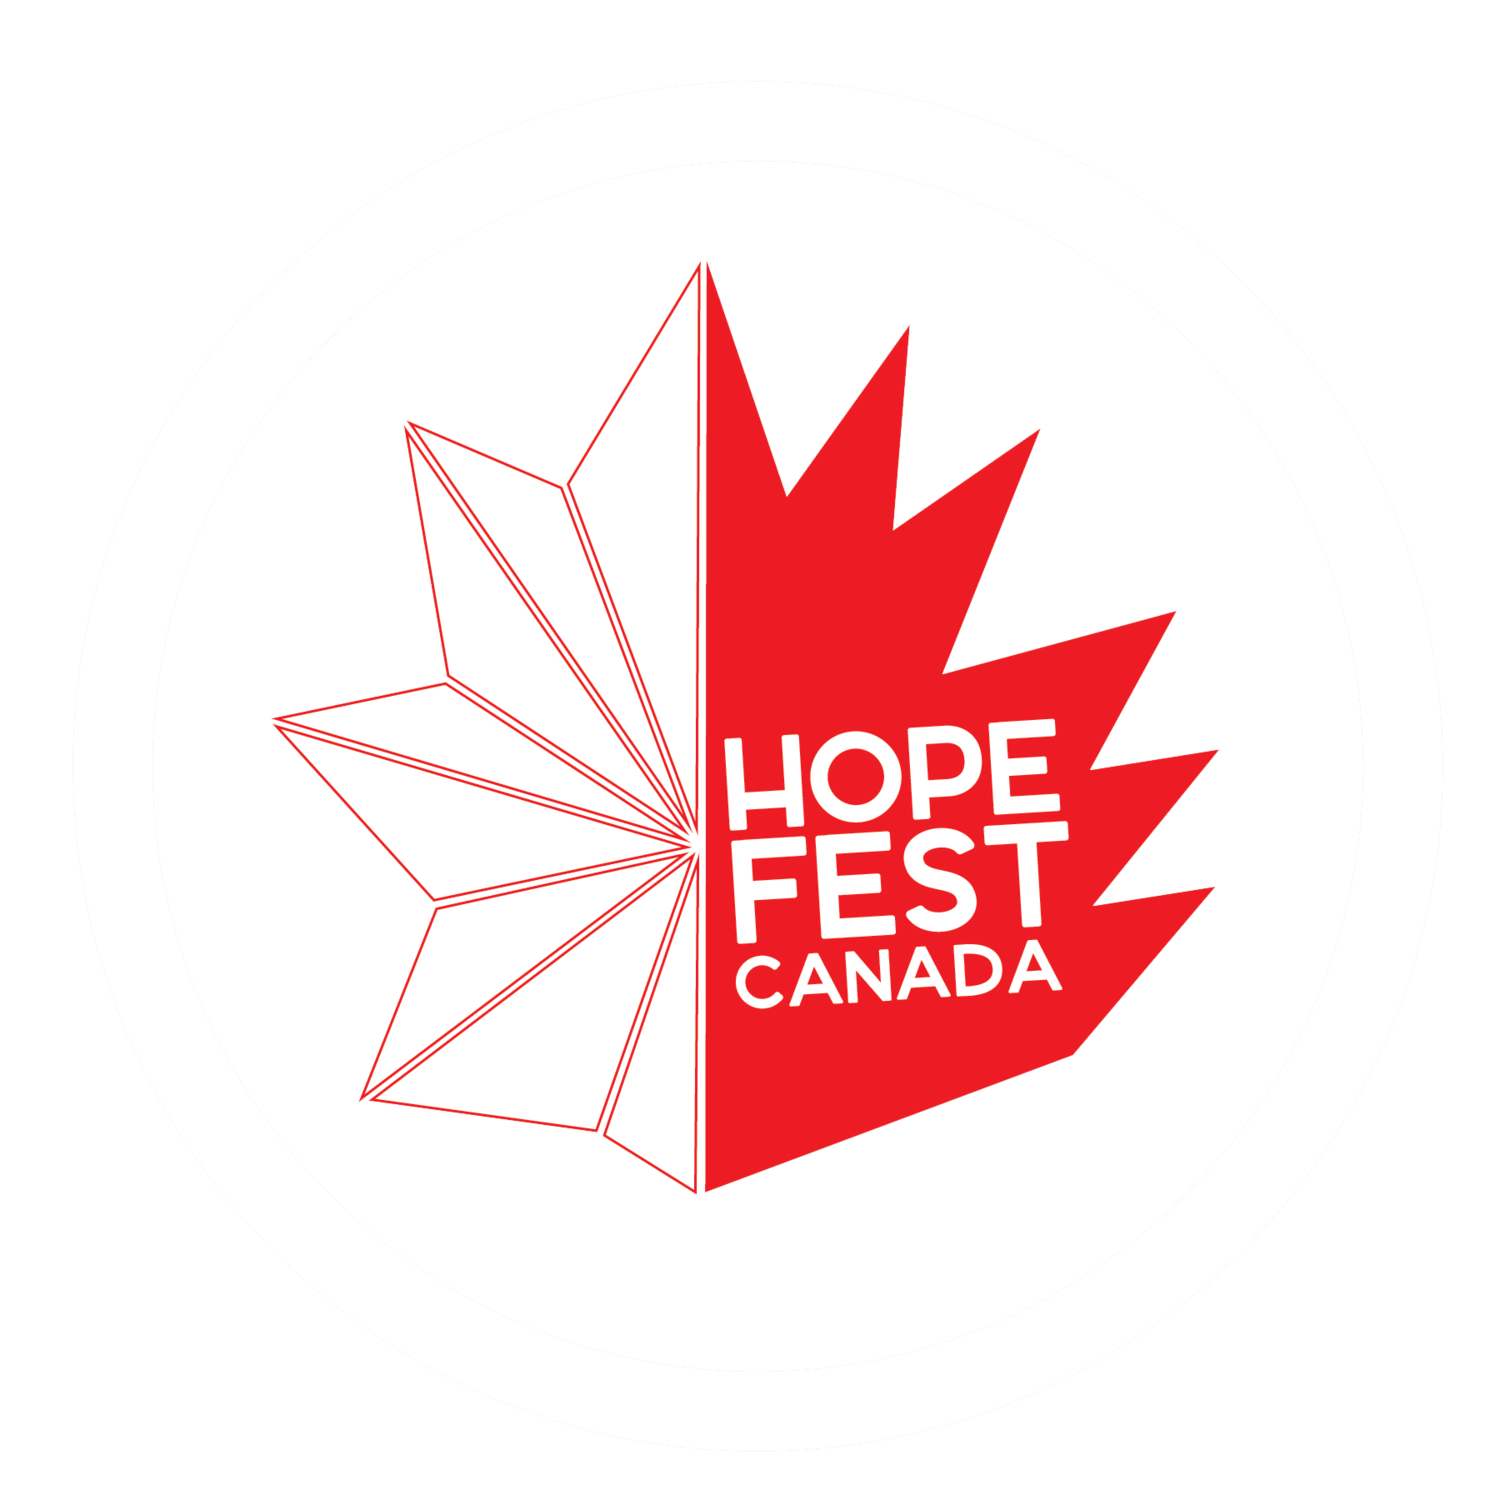 HopeFest Canada